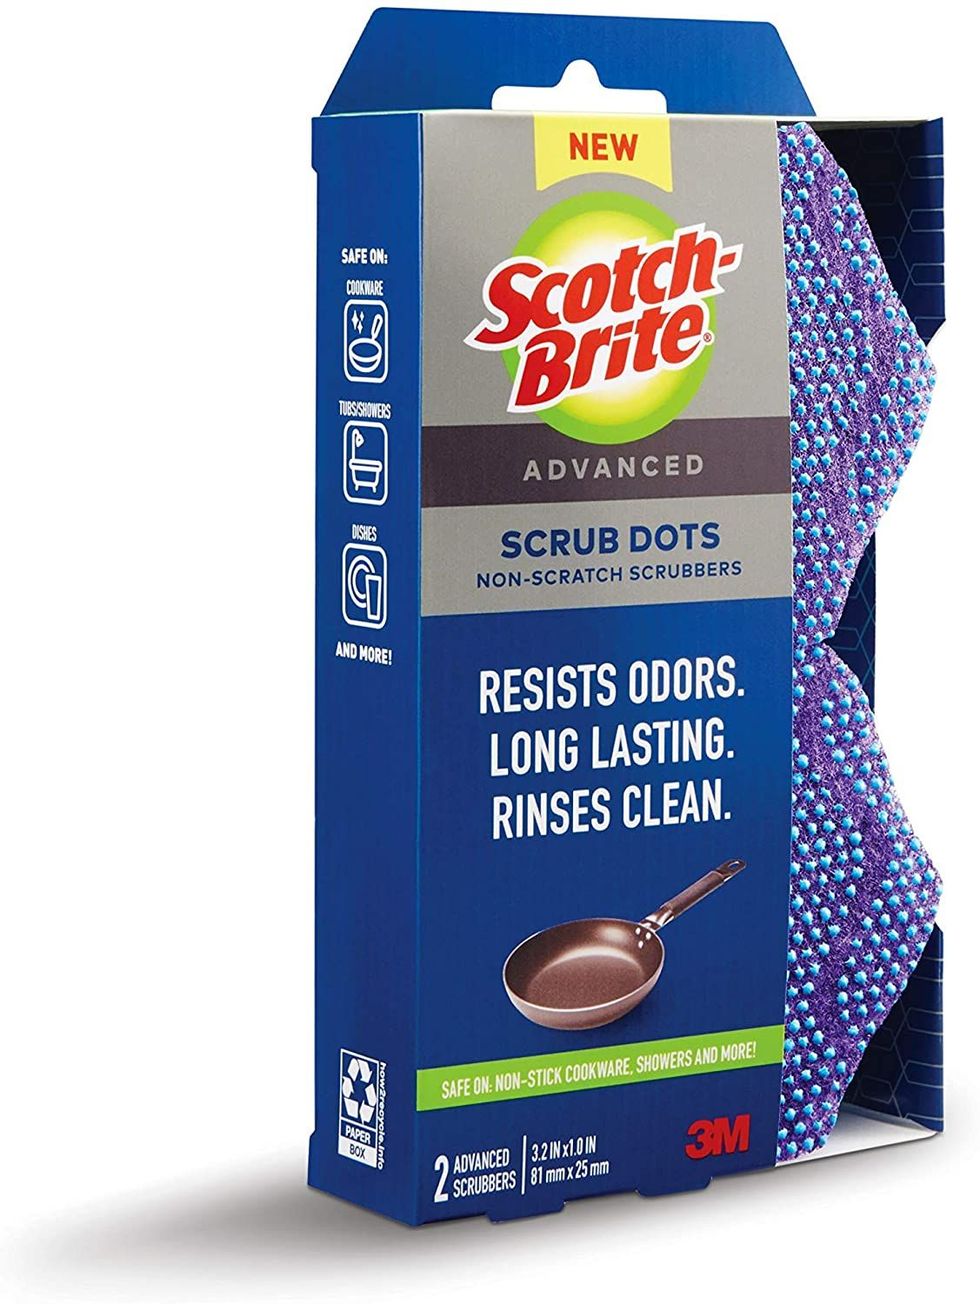 Scotch-Brite® Scrub Dots Advanced Non-Scratch Scrubbers 